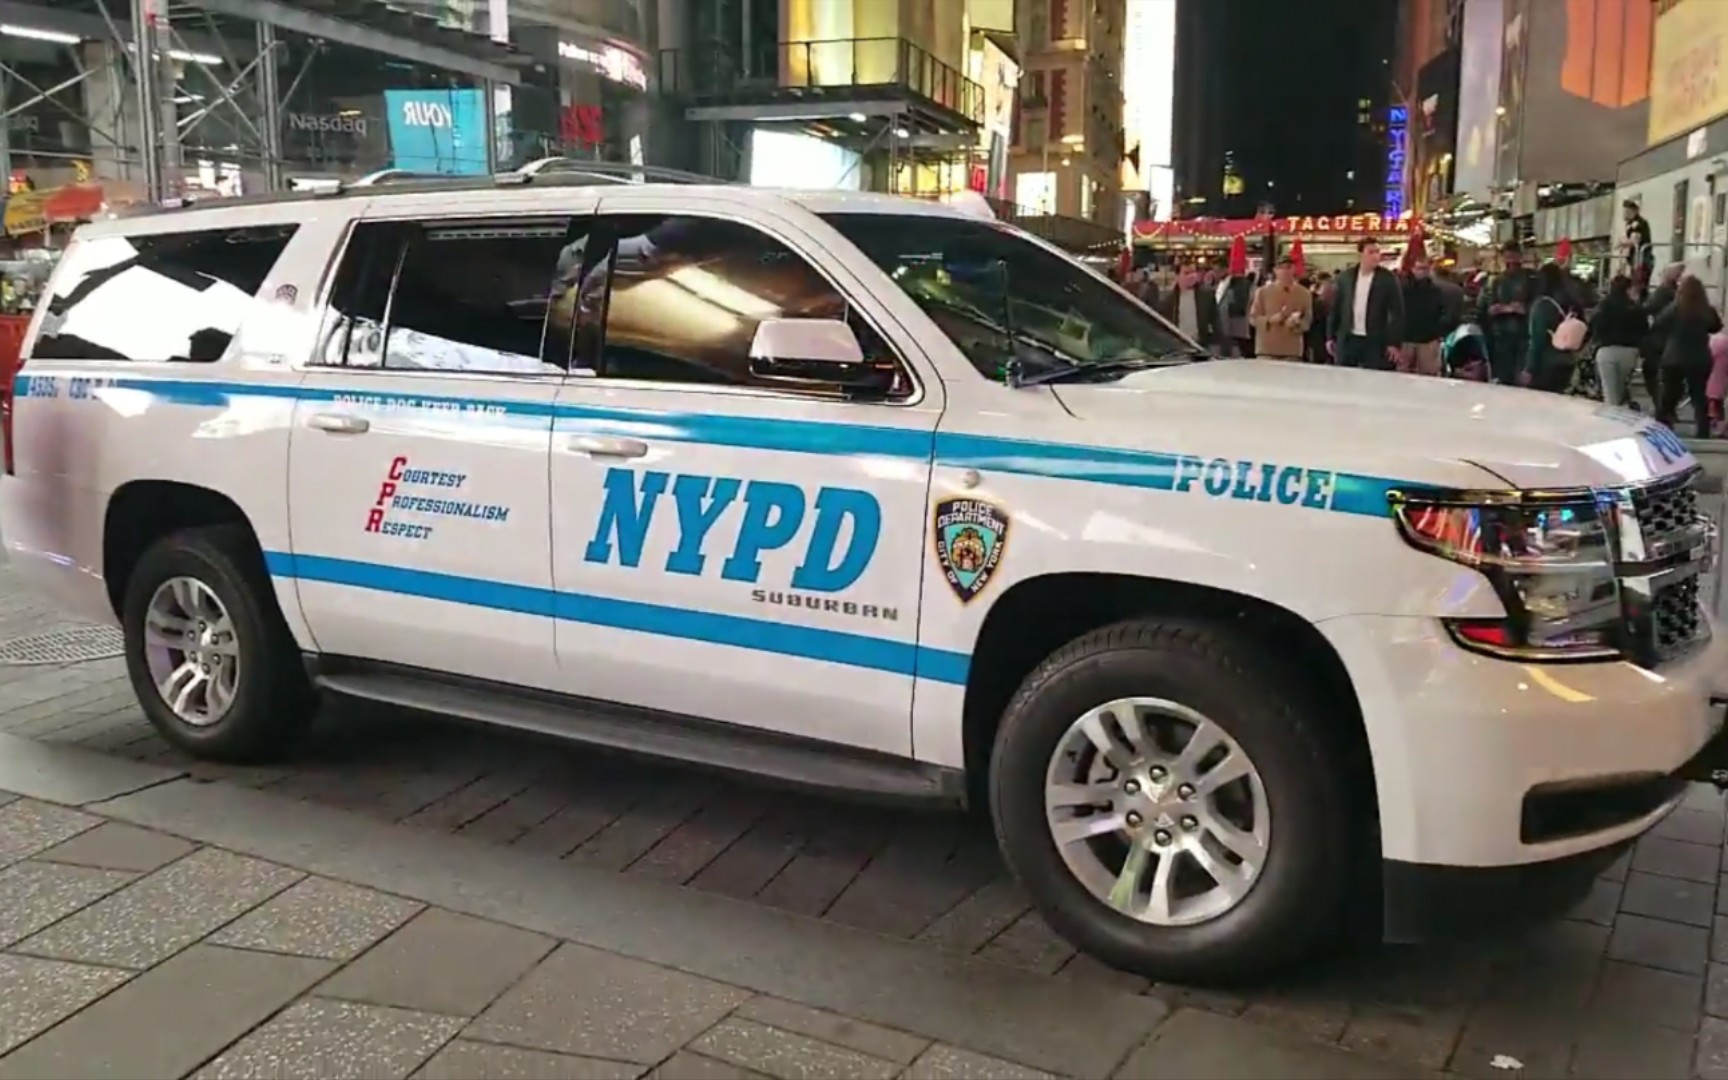 【nypd crc】纽约警察局危情响应中枢无顶灯雪佛兰萨博班k